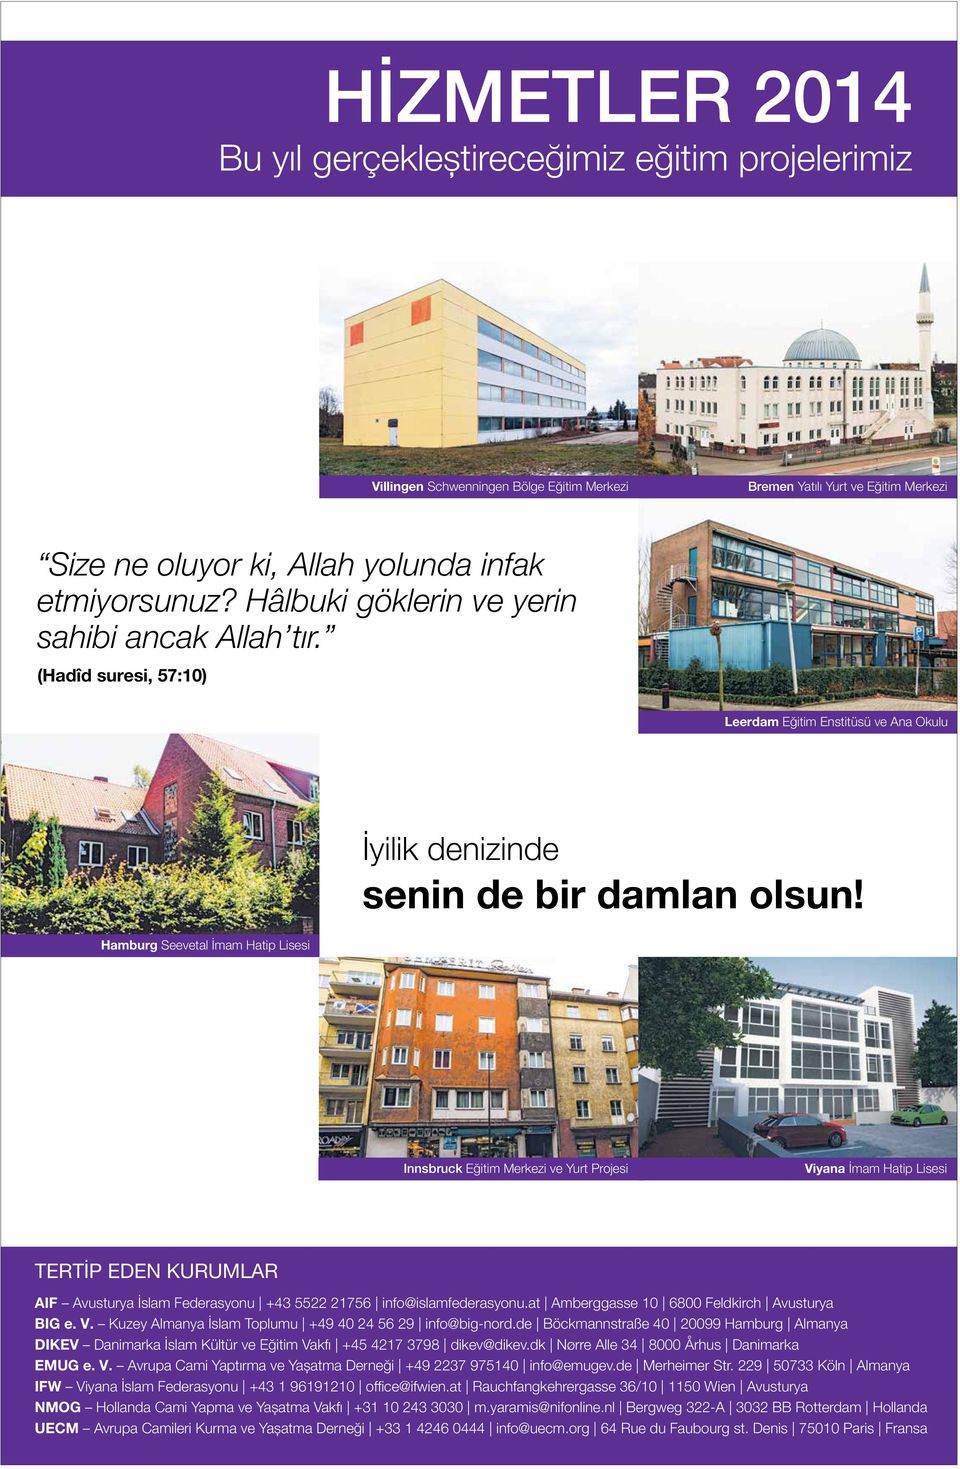 Hamburg Seevetal İmam Hatip Lisesi Innsbruck Eğitim Merkezi ve Yurt Projesi Viyana İmam Hatip Lisesi TERTİP EDEN KURUMLAR AIF Avusturya İslam Federasyonu +43 5522 21756 info@islamfederasyonu.